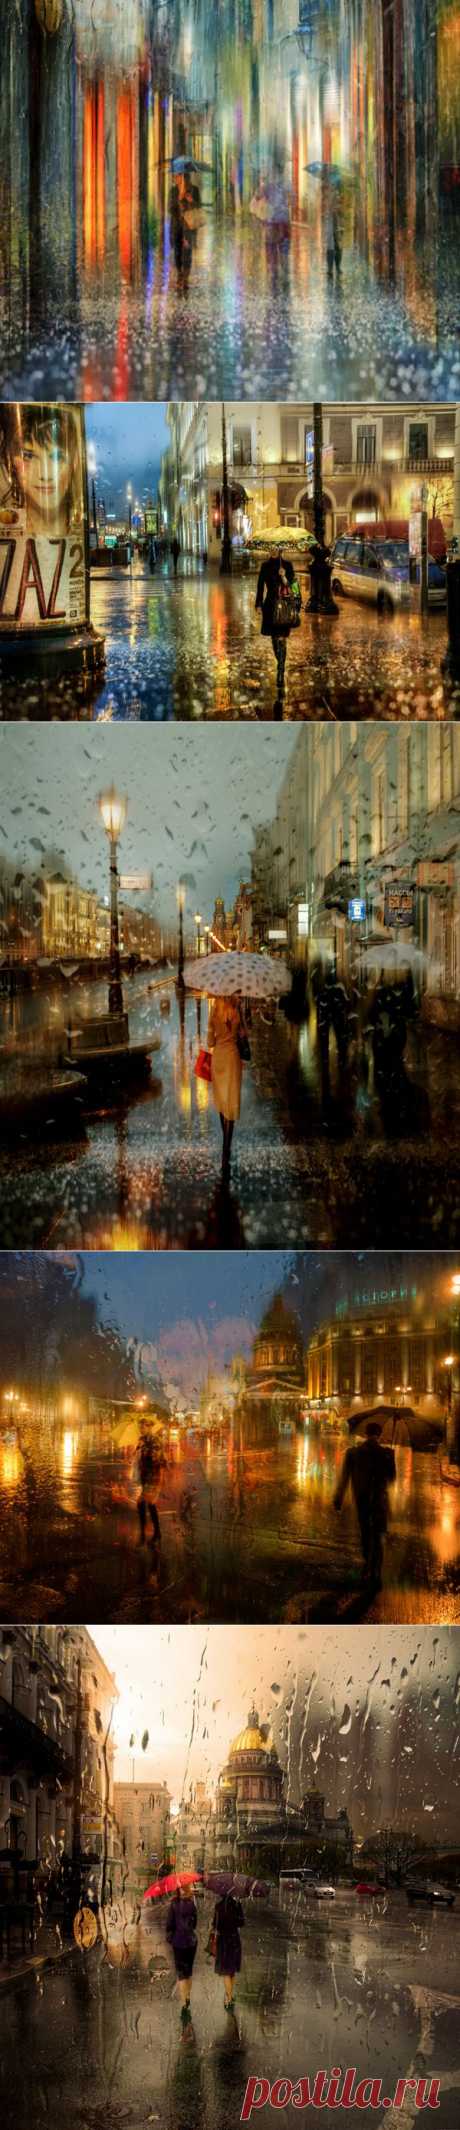 Дождливые городские пейзажи в картинных фотографиях Эдуарда Гордеева (Eduard Gordeev) - Фотоискусство